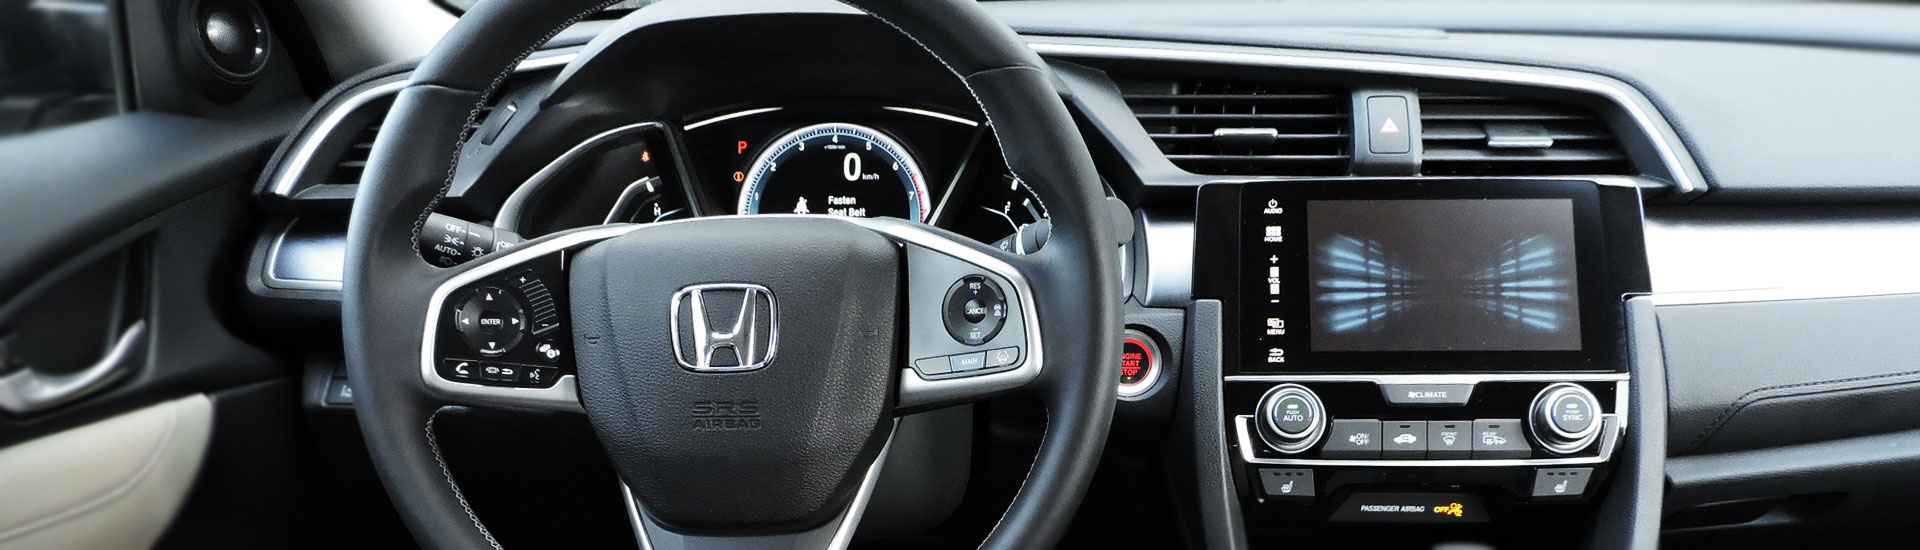 Honda Civic Custom Dash Kits